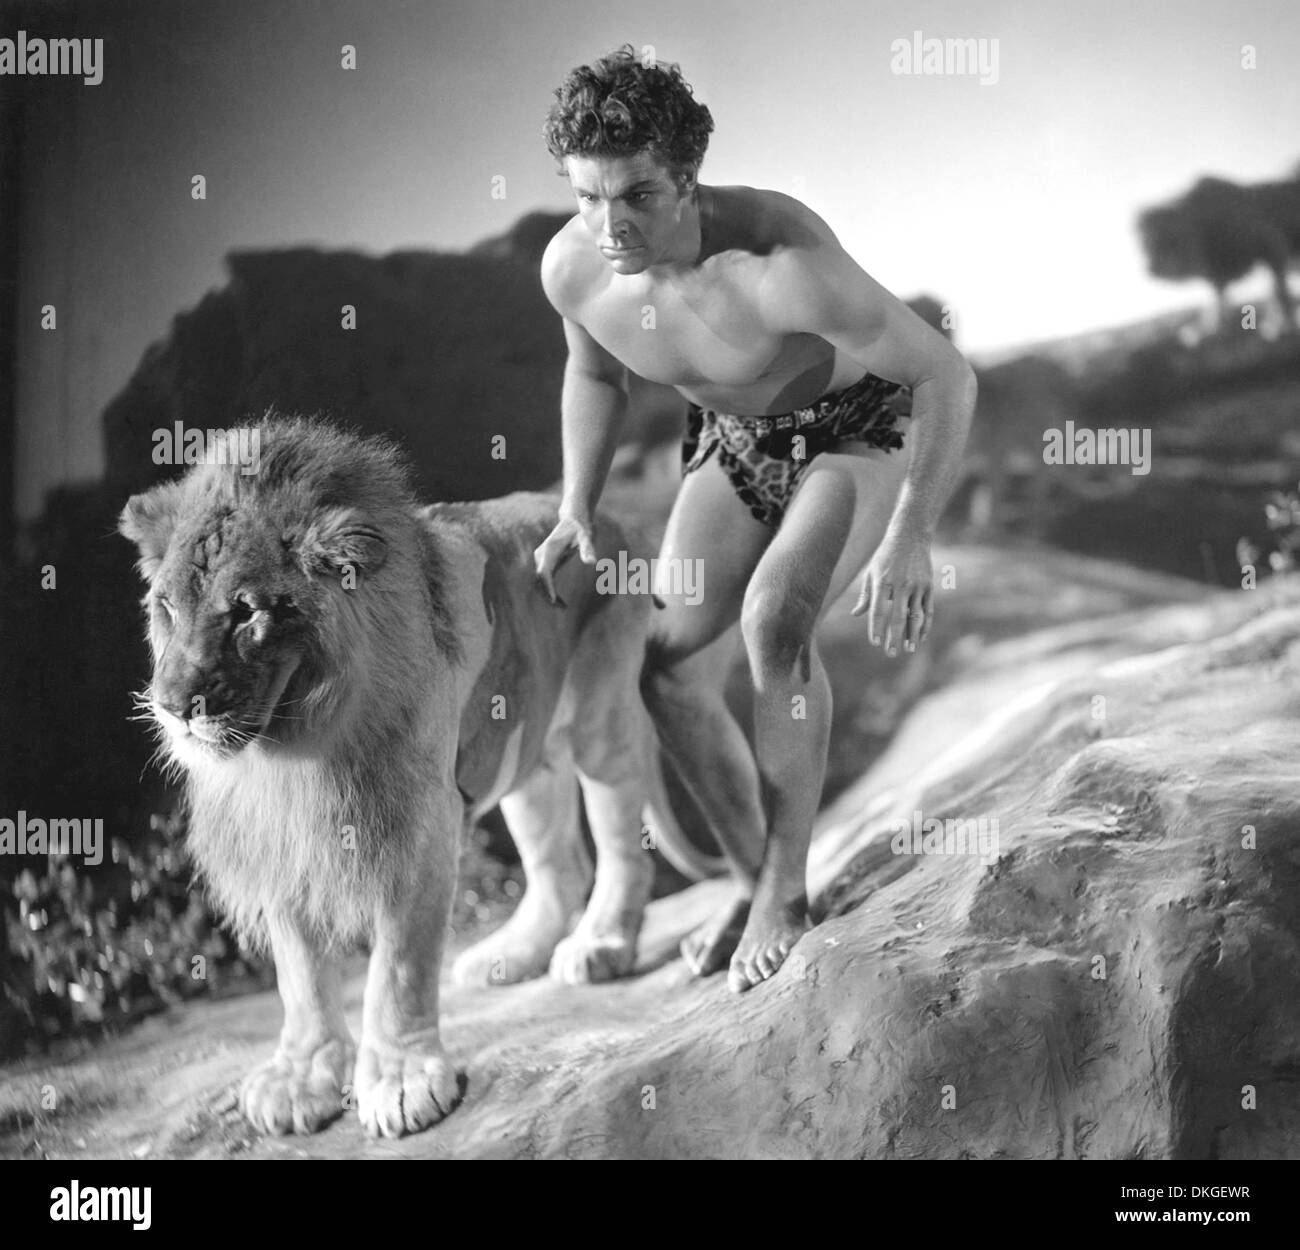 El rey de la selva de 1933 Paramount Pictures Film con Buster Crabbe Foto de stock